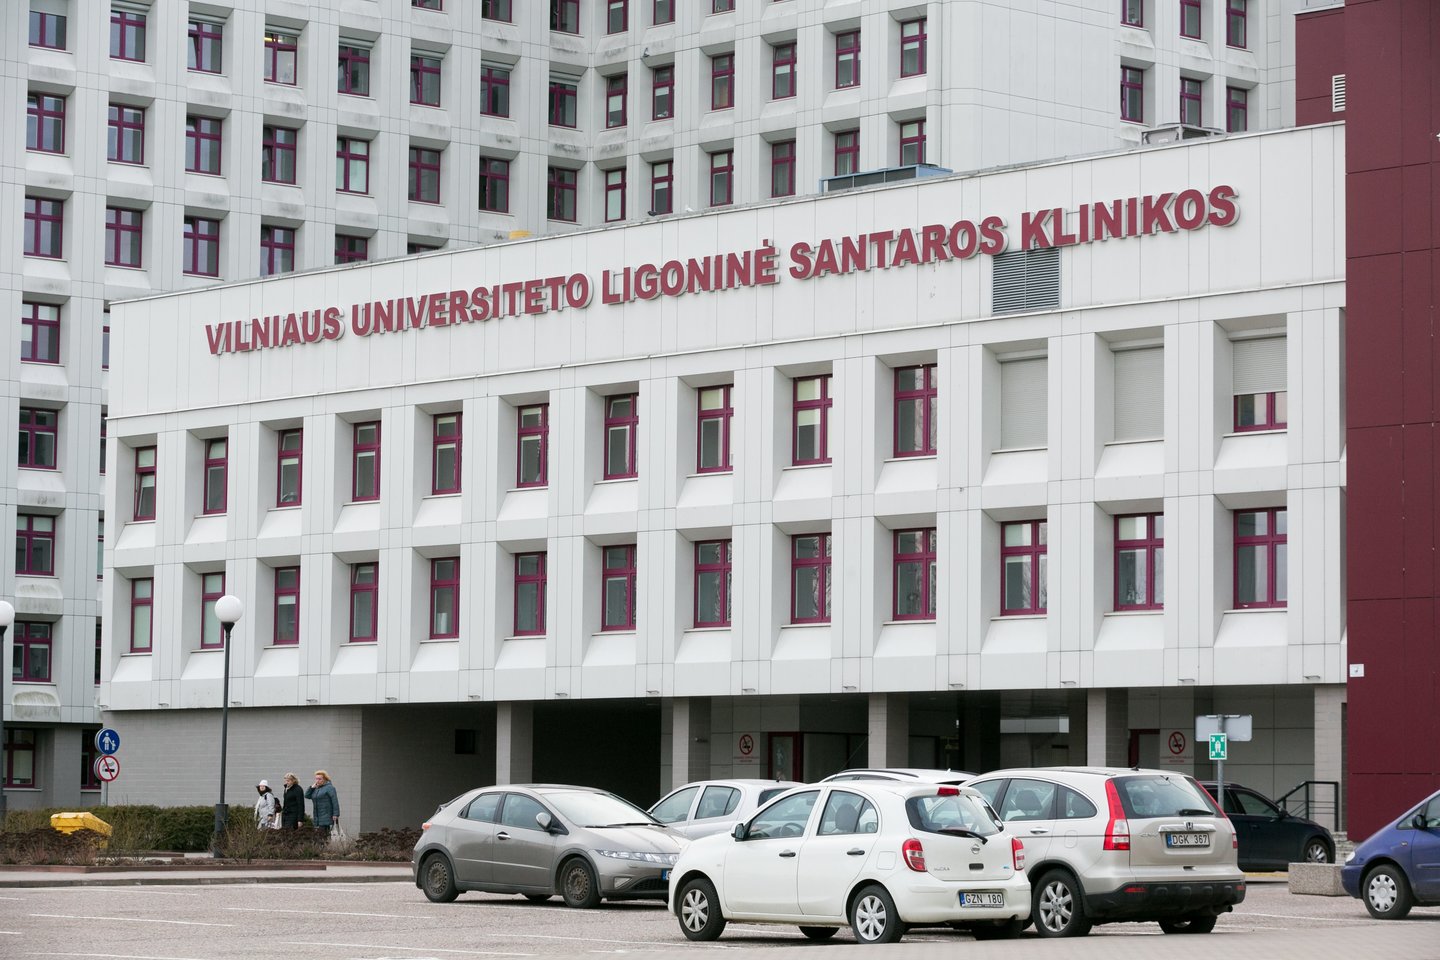 Vilniaus universiteto ligoninės Santaros klinikų medikų darbai atkreipė pasaulio mokslininkų dėmesį.<br>T.Bauro nuotr.